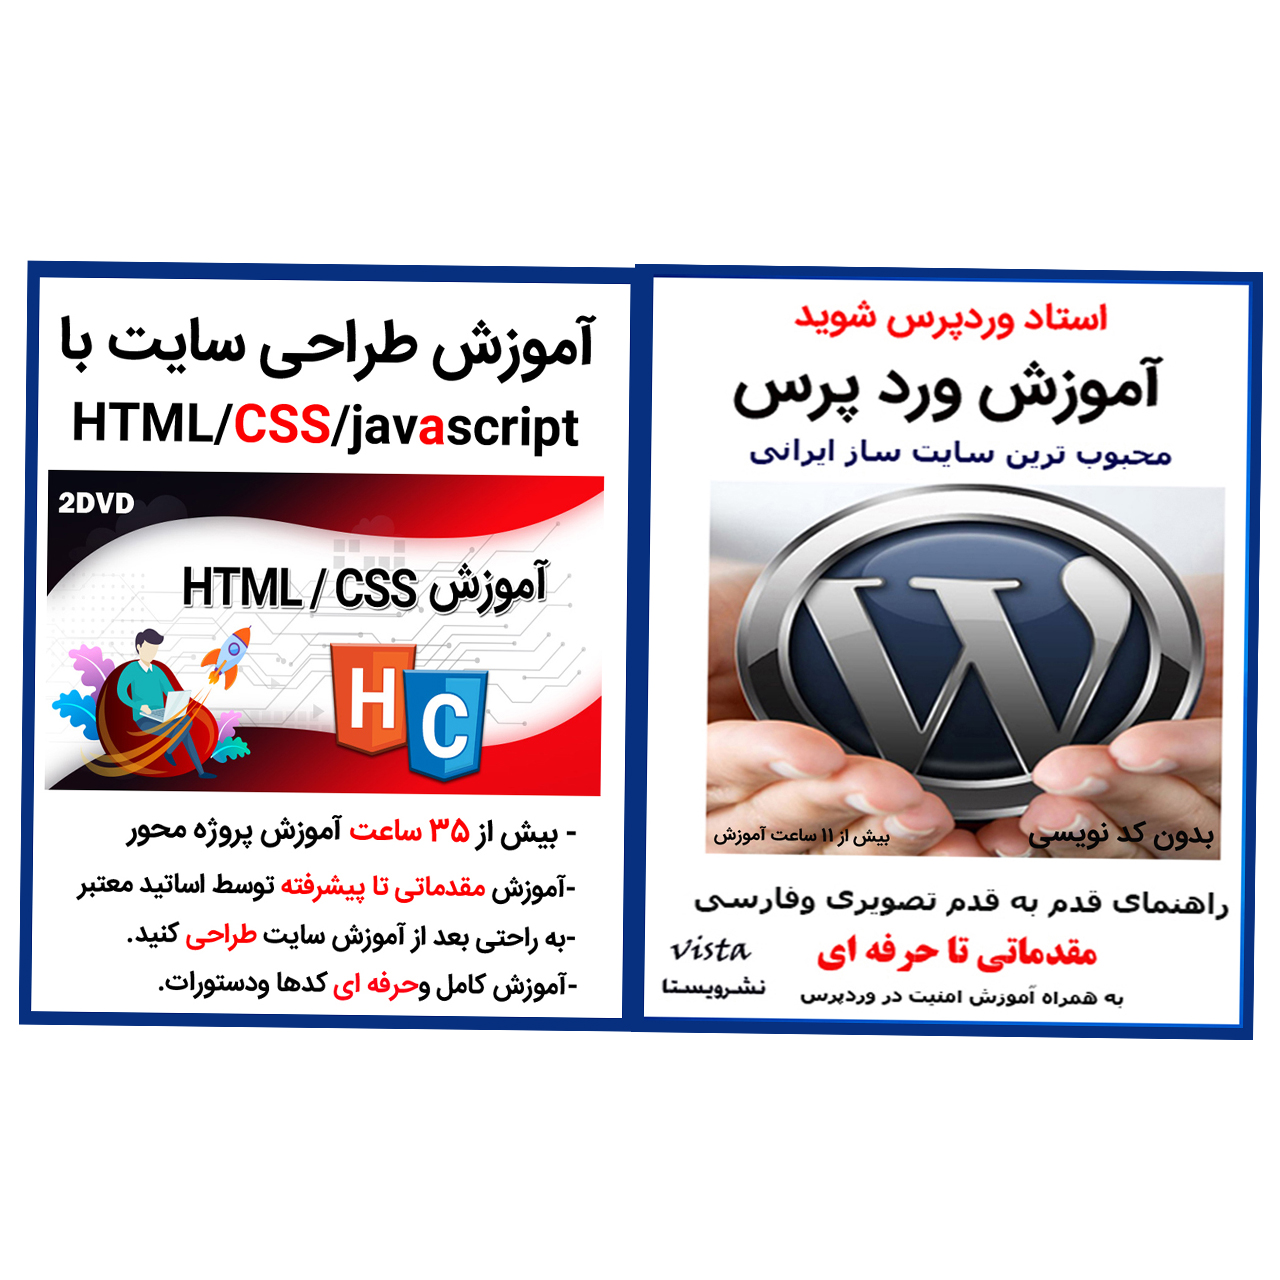 نرم افزار آموزش وردپرس نشر ویستا به همراه نرم افزار آموزش طراحی سایت با css,html,javascript نشر کاران